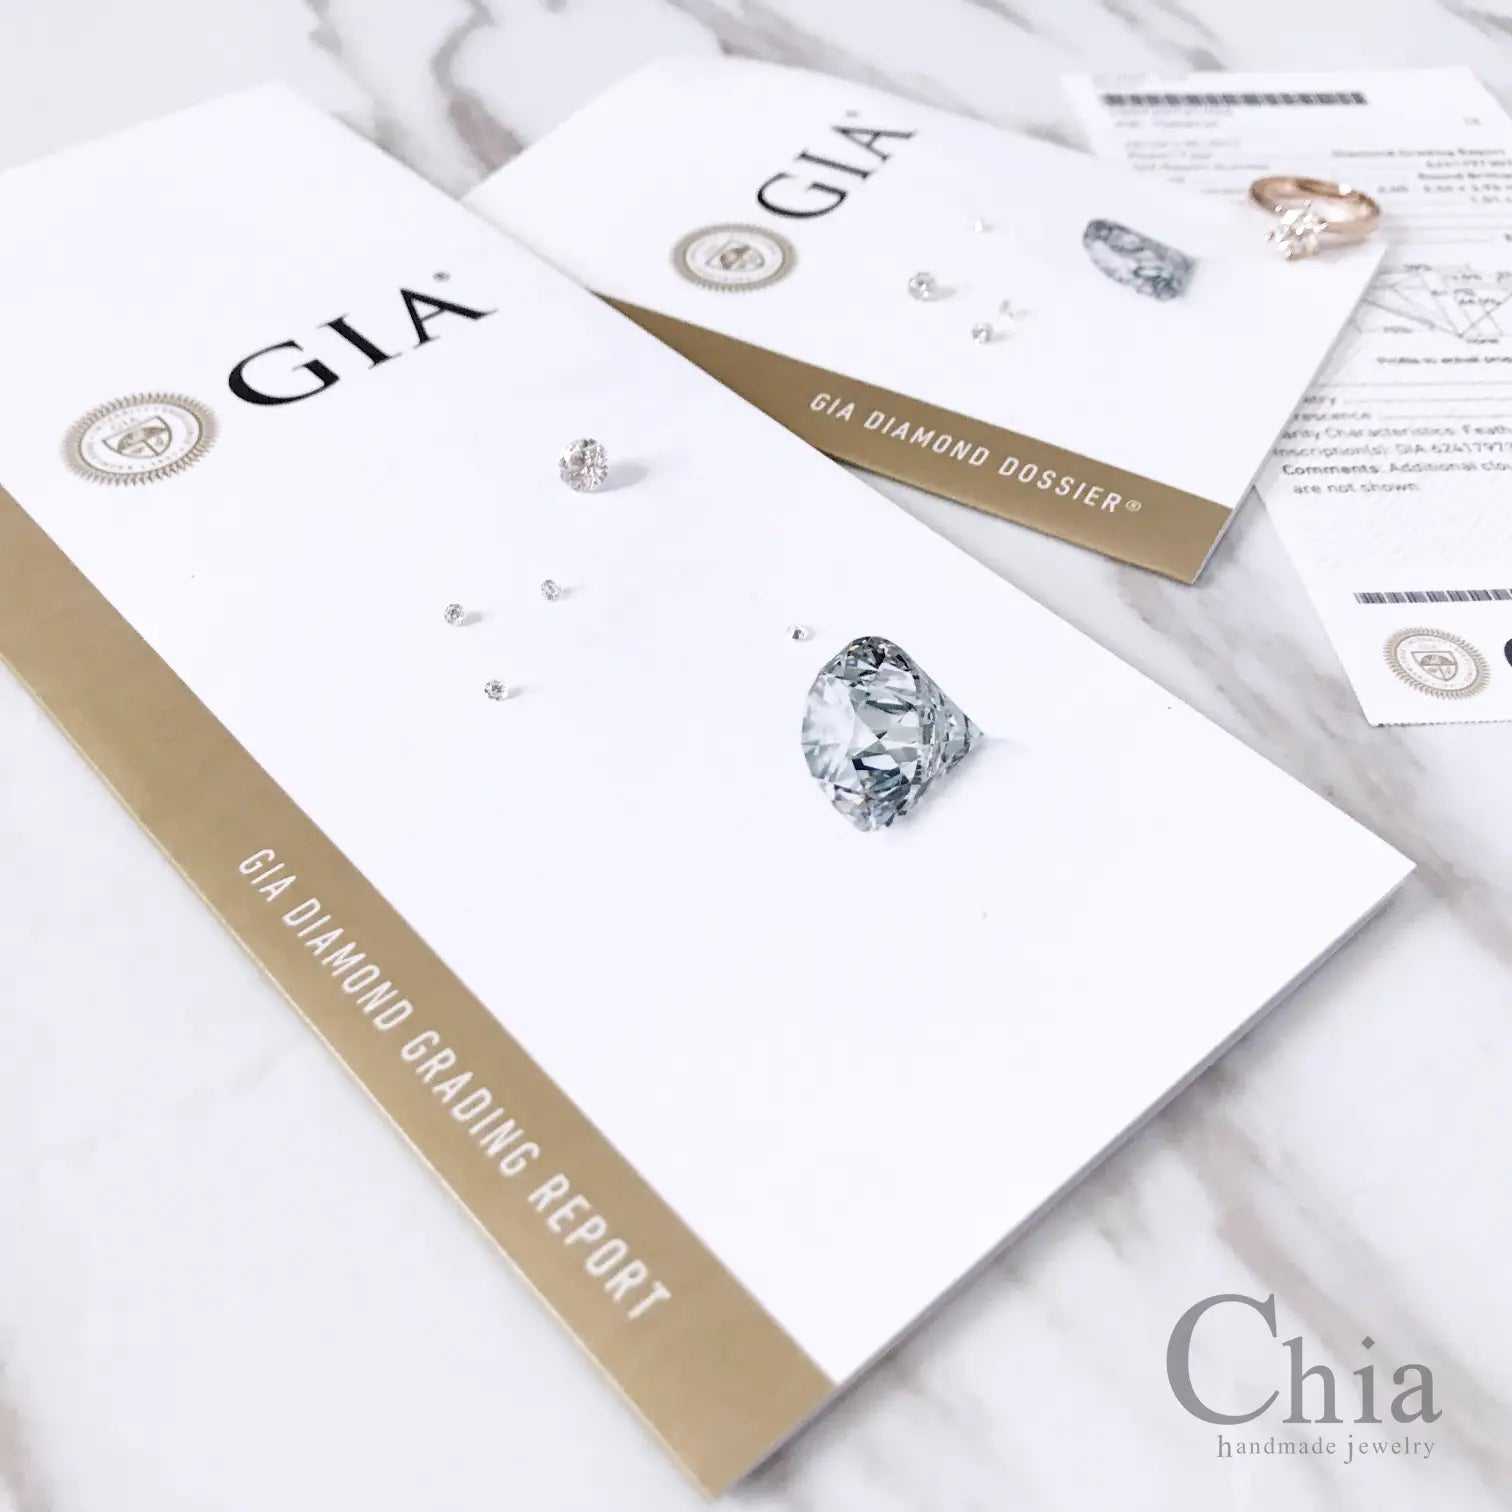 鑽石GIA證書與GIA 4C鑽石鑑定介紹